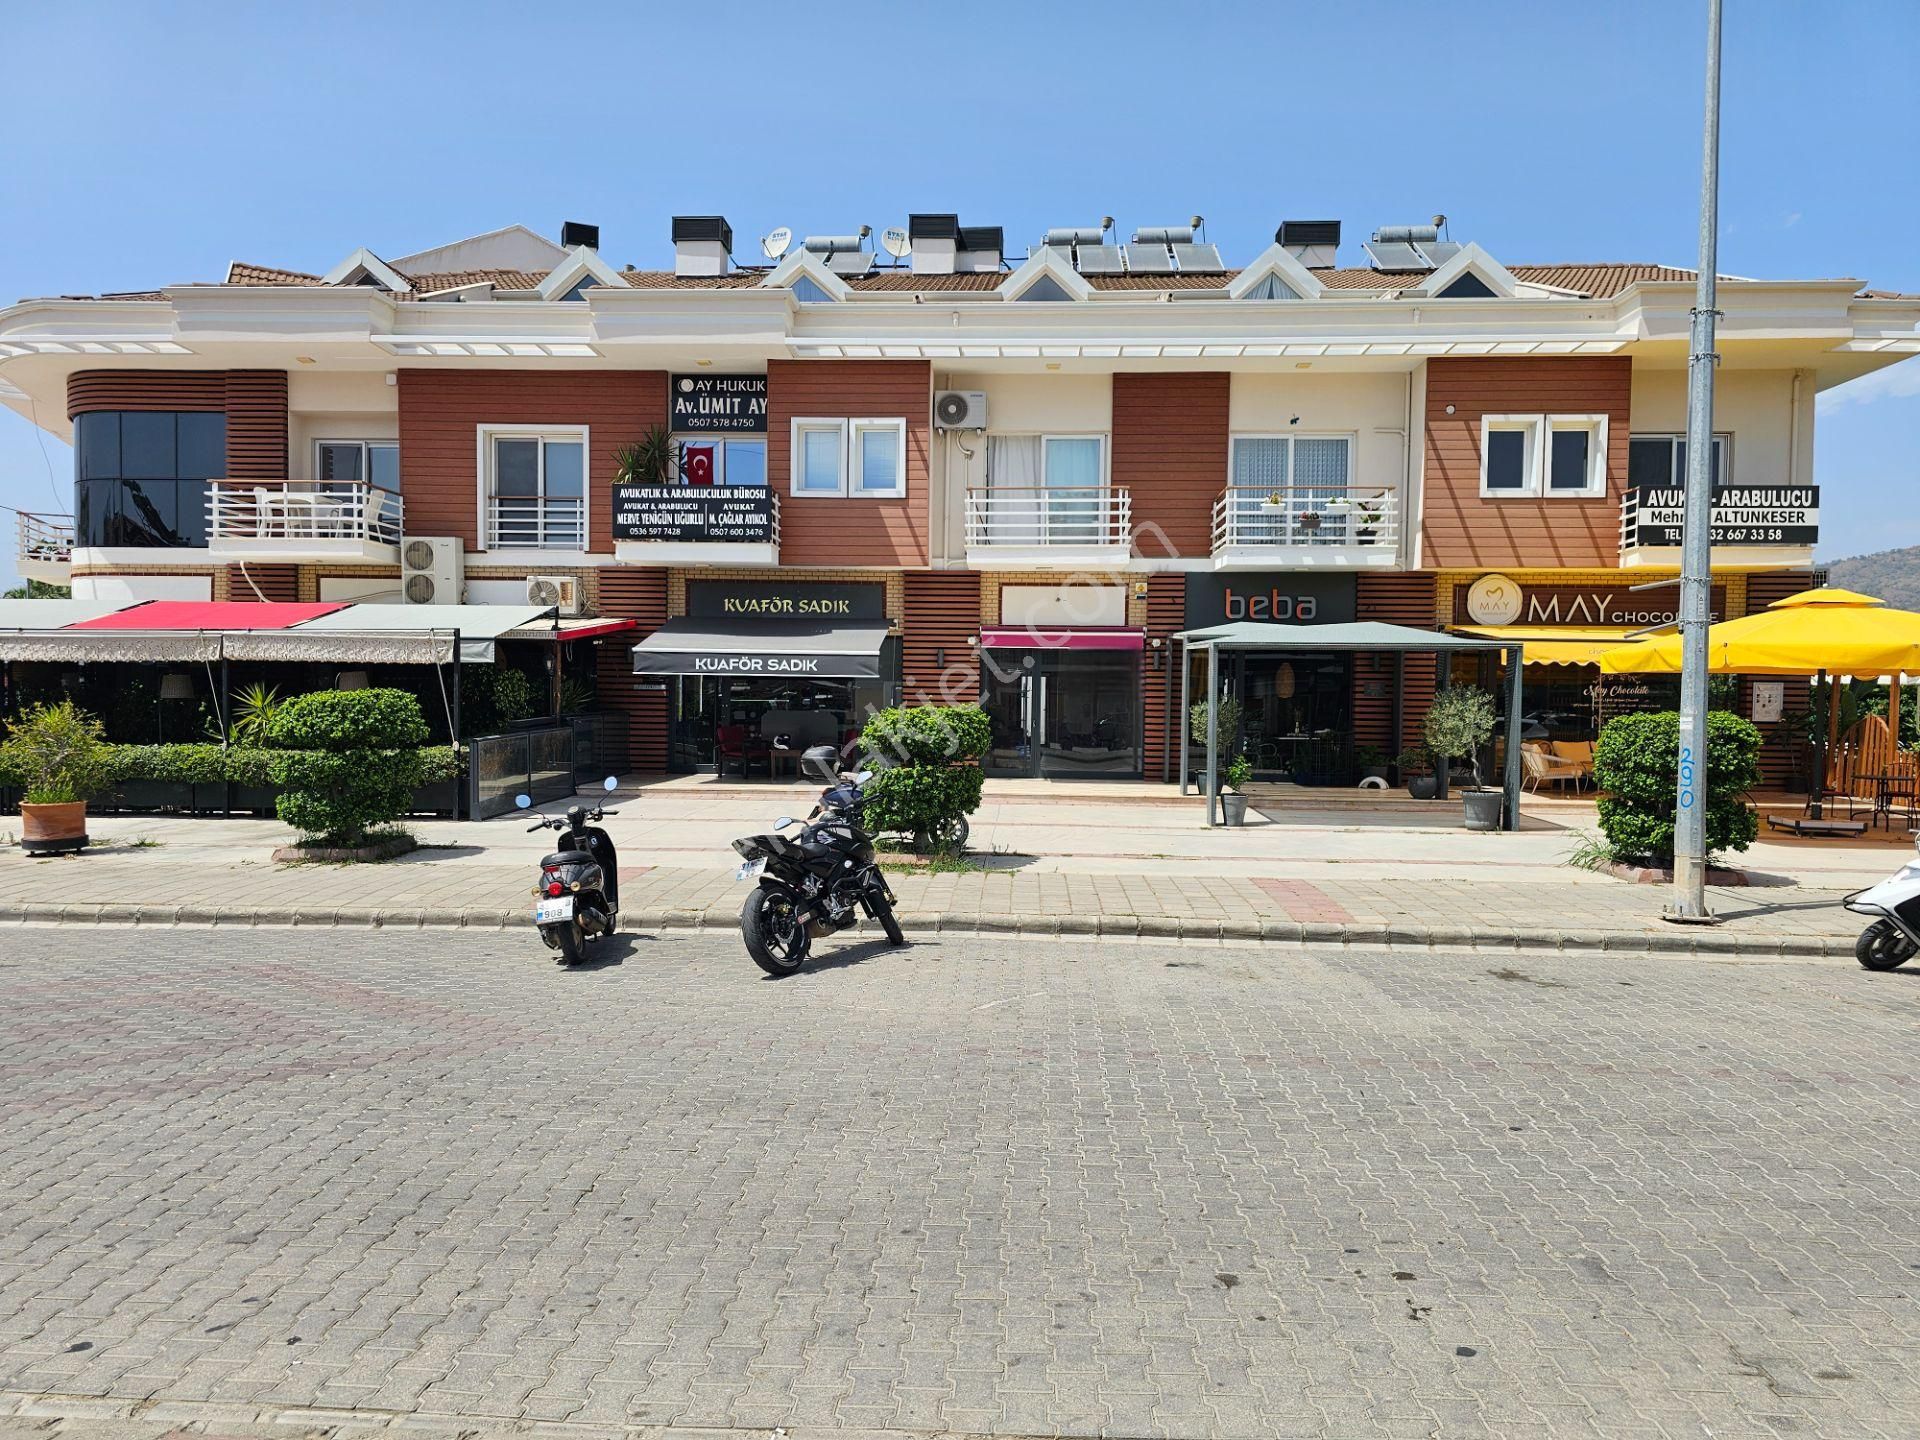 Fethiye Akarca Satılık Dükkan & Mağaza GoldHouse dan Satılık Fethiye nin En Popüler Caddesi Yerguzlar da Dükkan